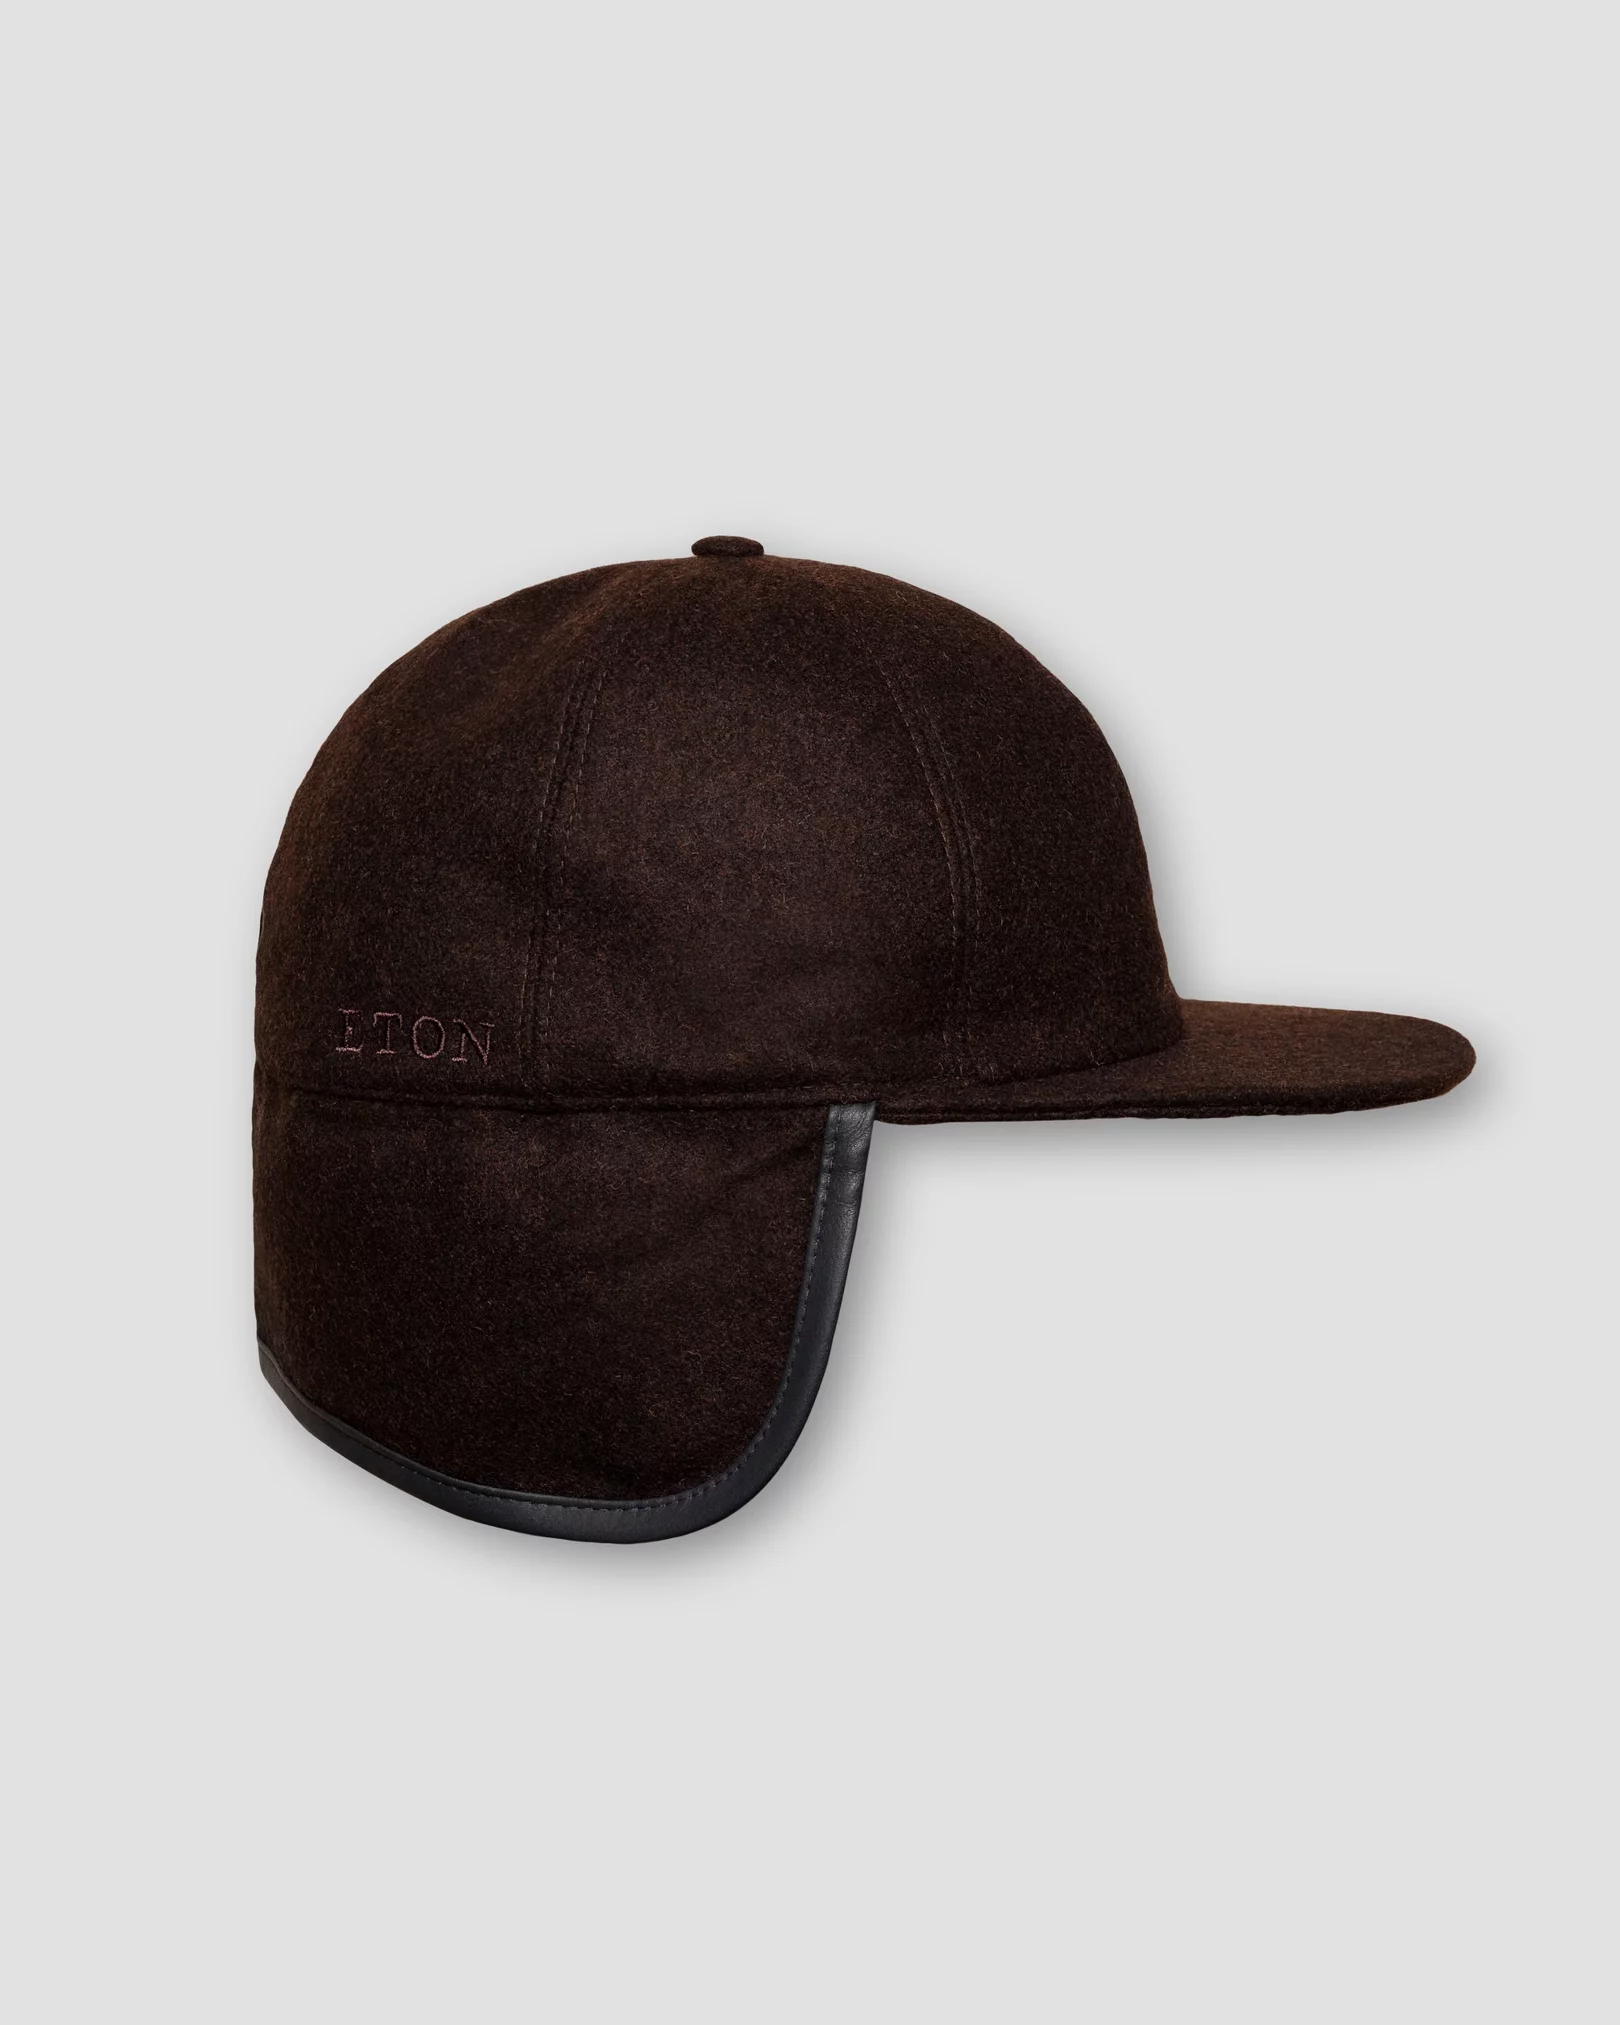 Eton - brown er flap cap